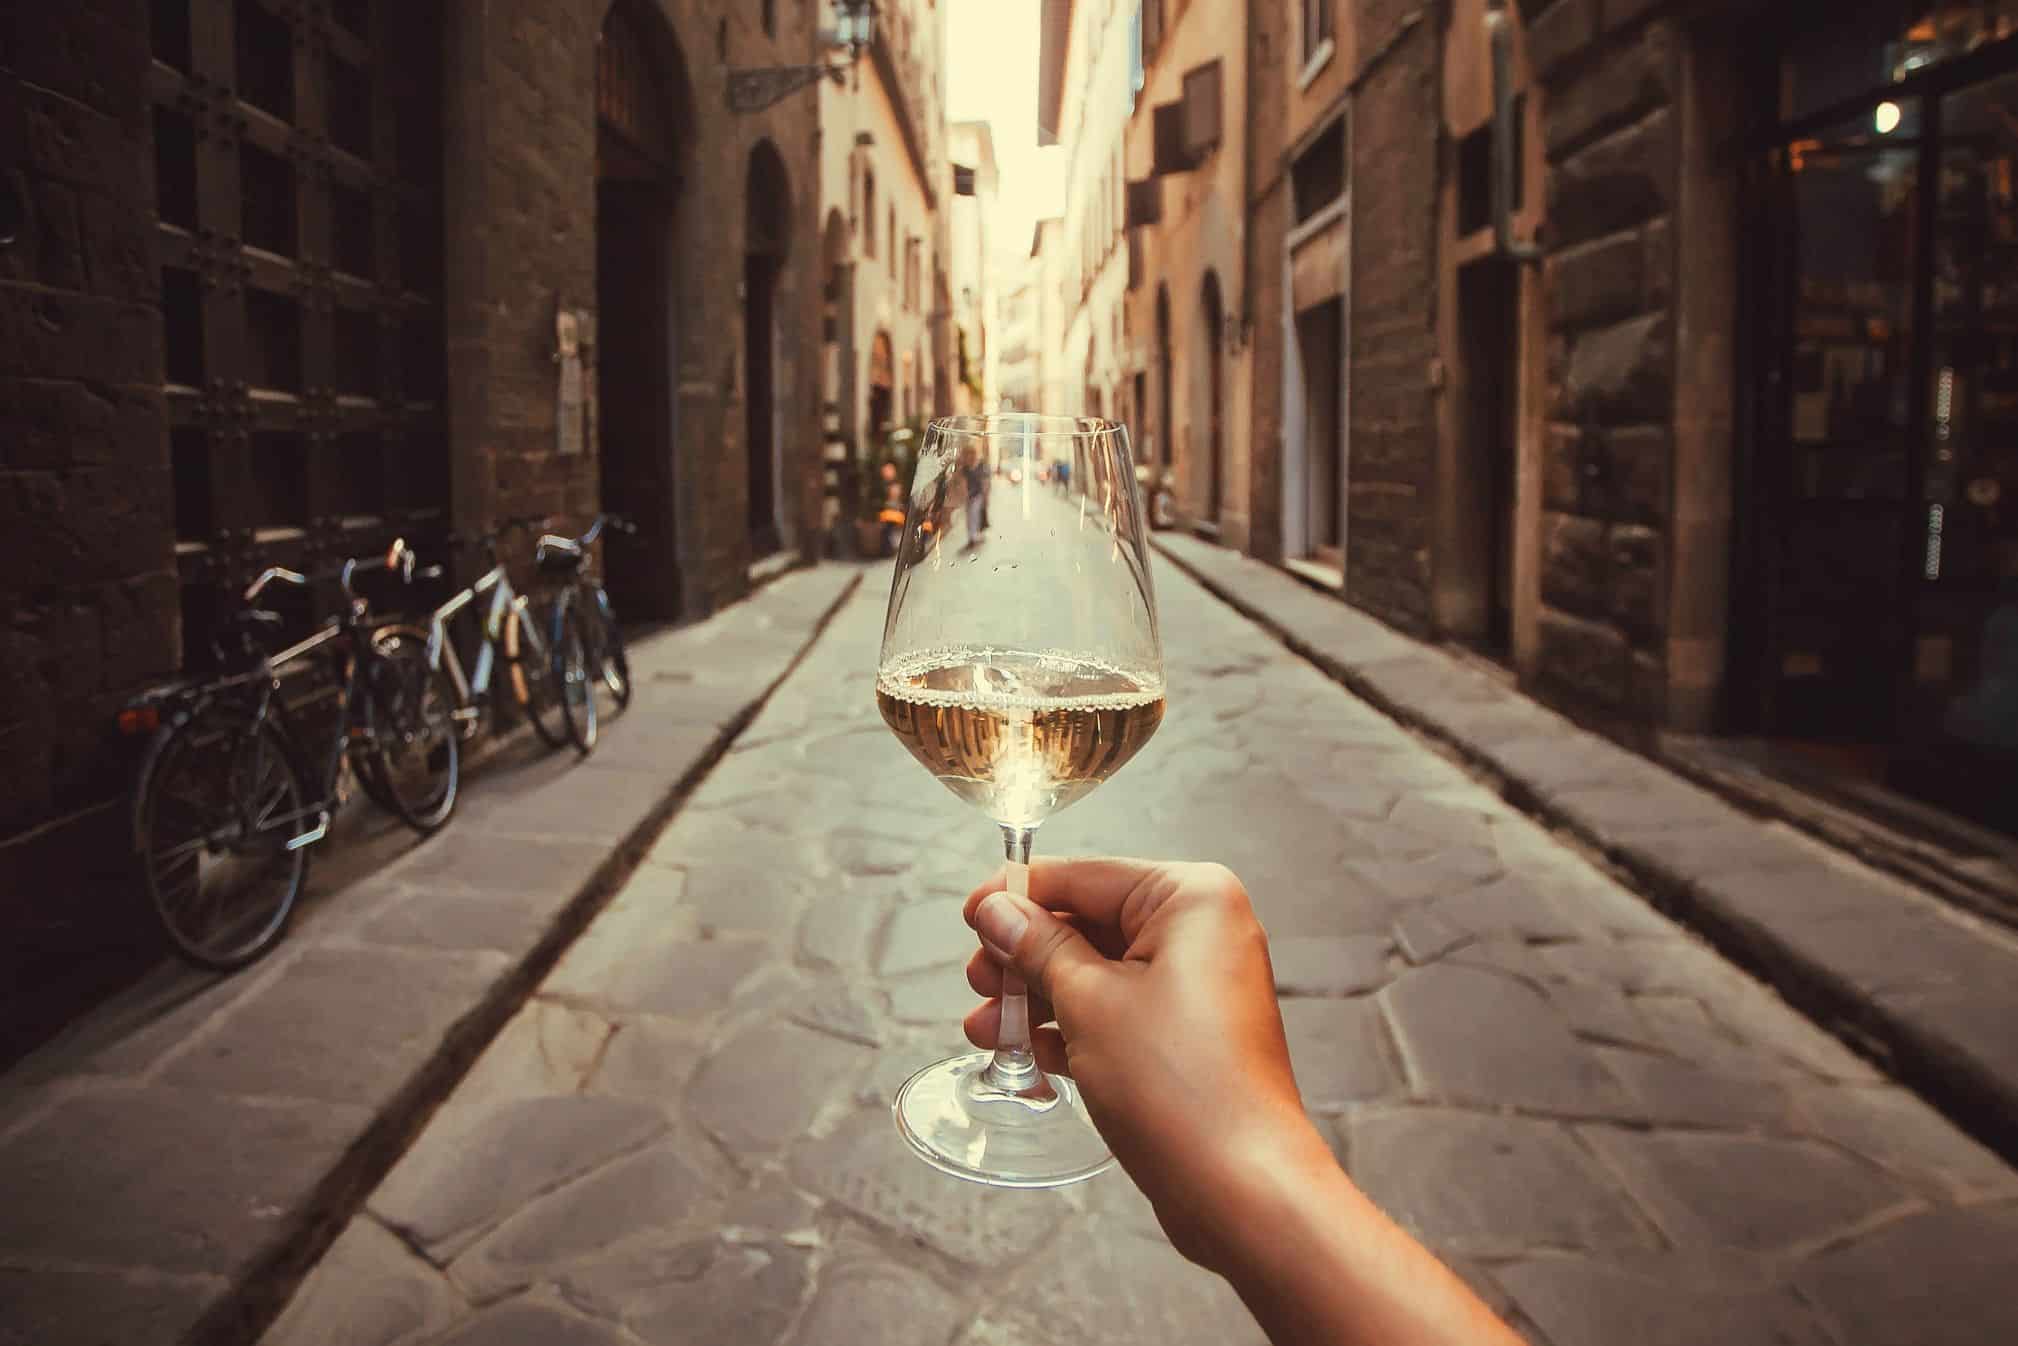 bere per strada è permesso - Italy travel tips